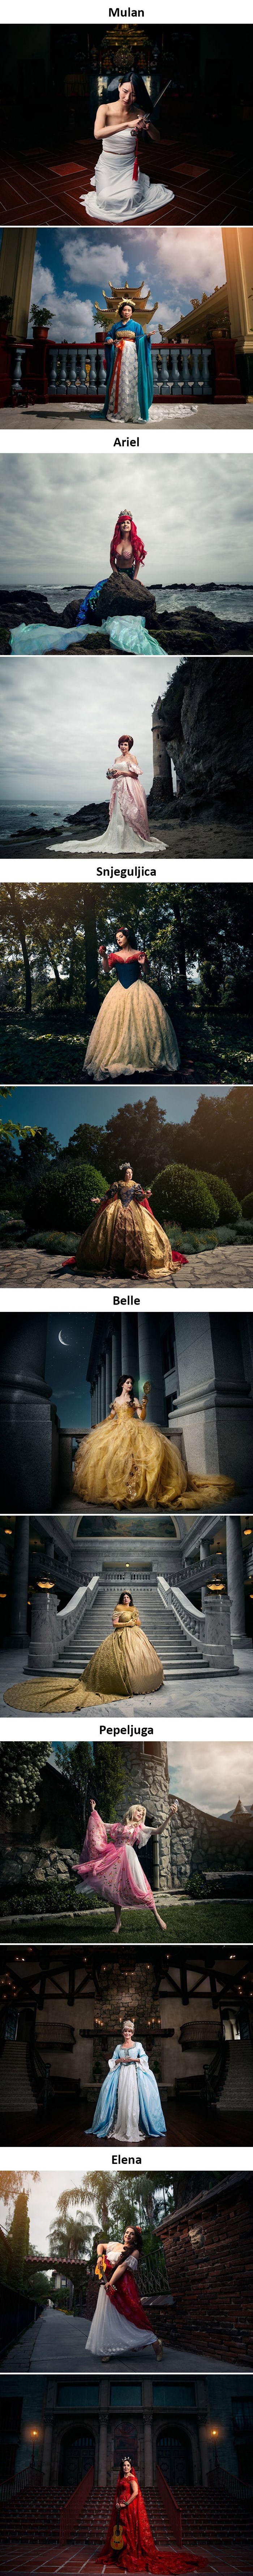 Jeste li se ikad zapitali kako bi Disneyeve princeze izgledale kasnije kao kraljice?